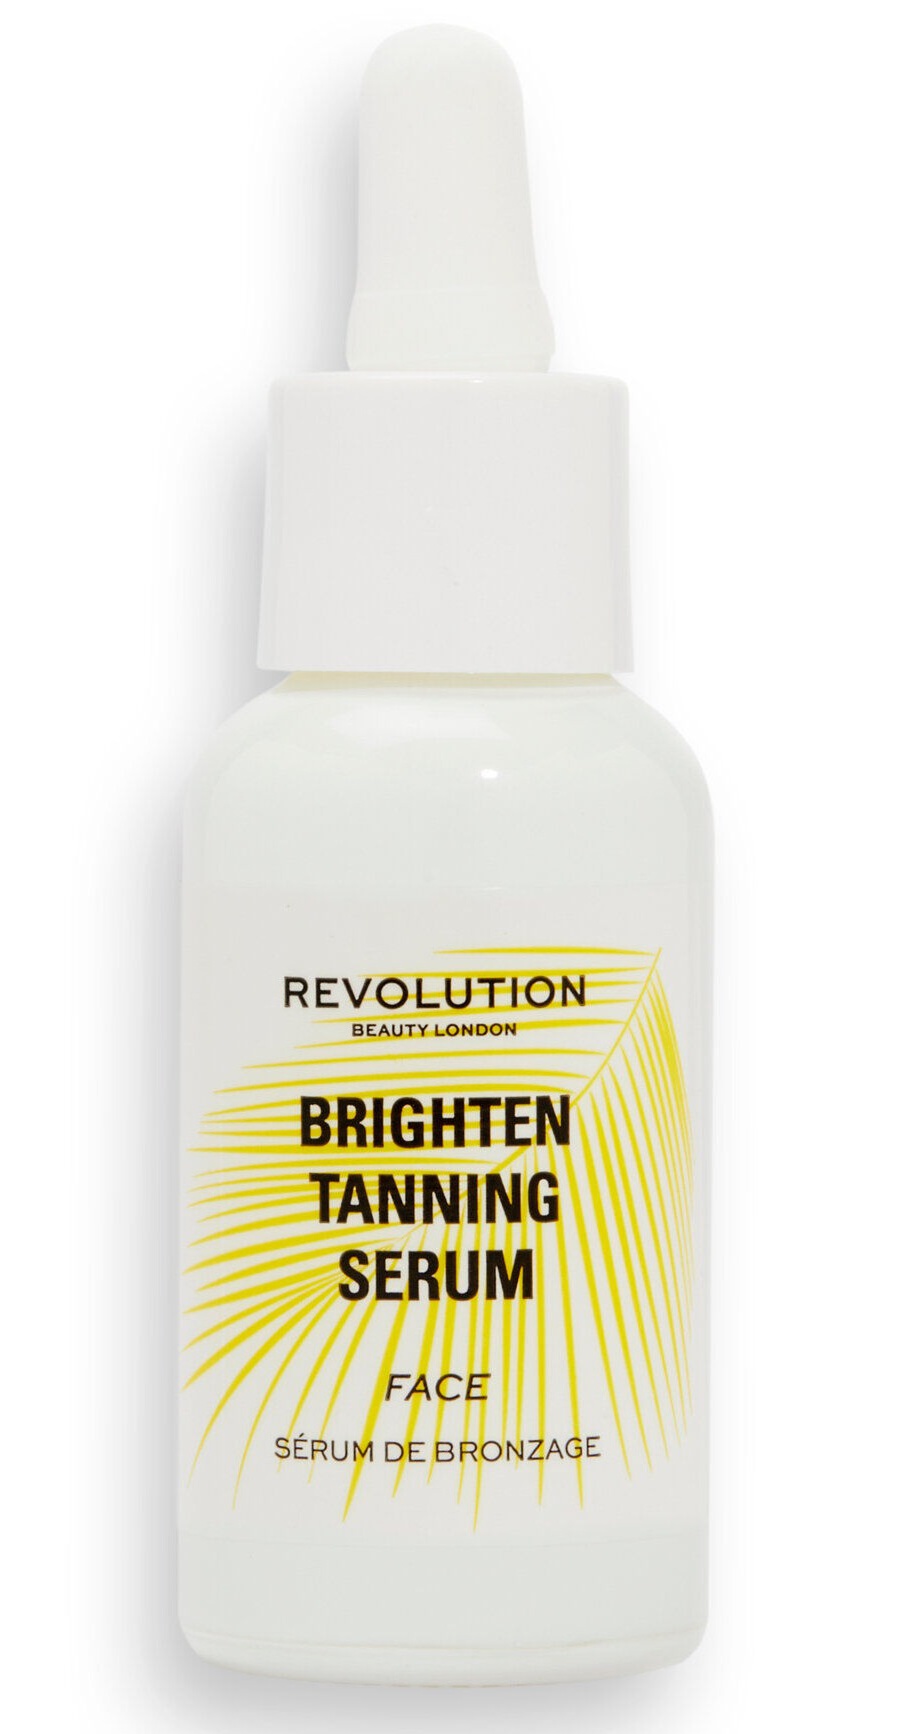 Revolution Brighten Tanning Serum